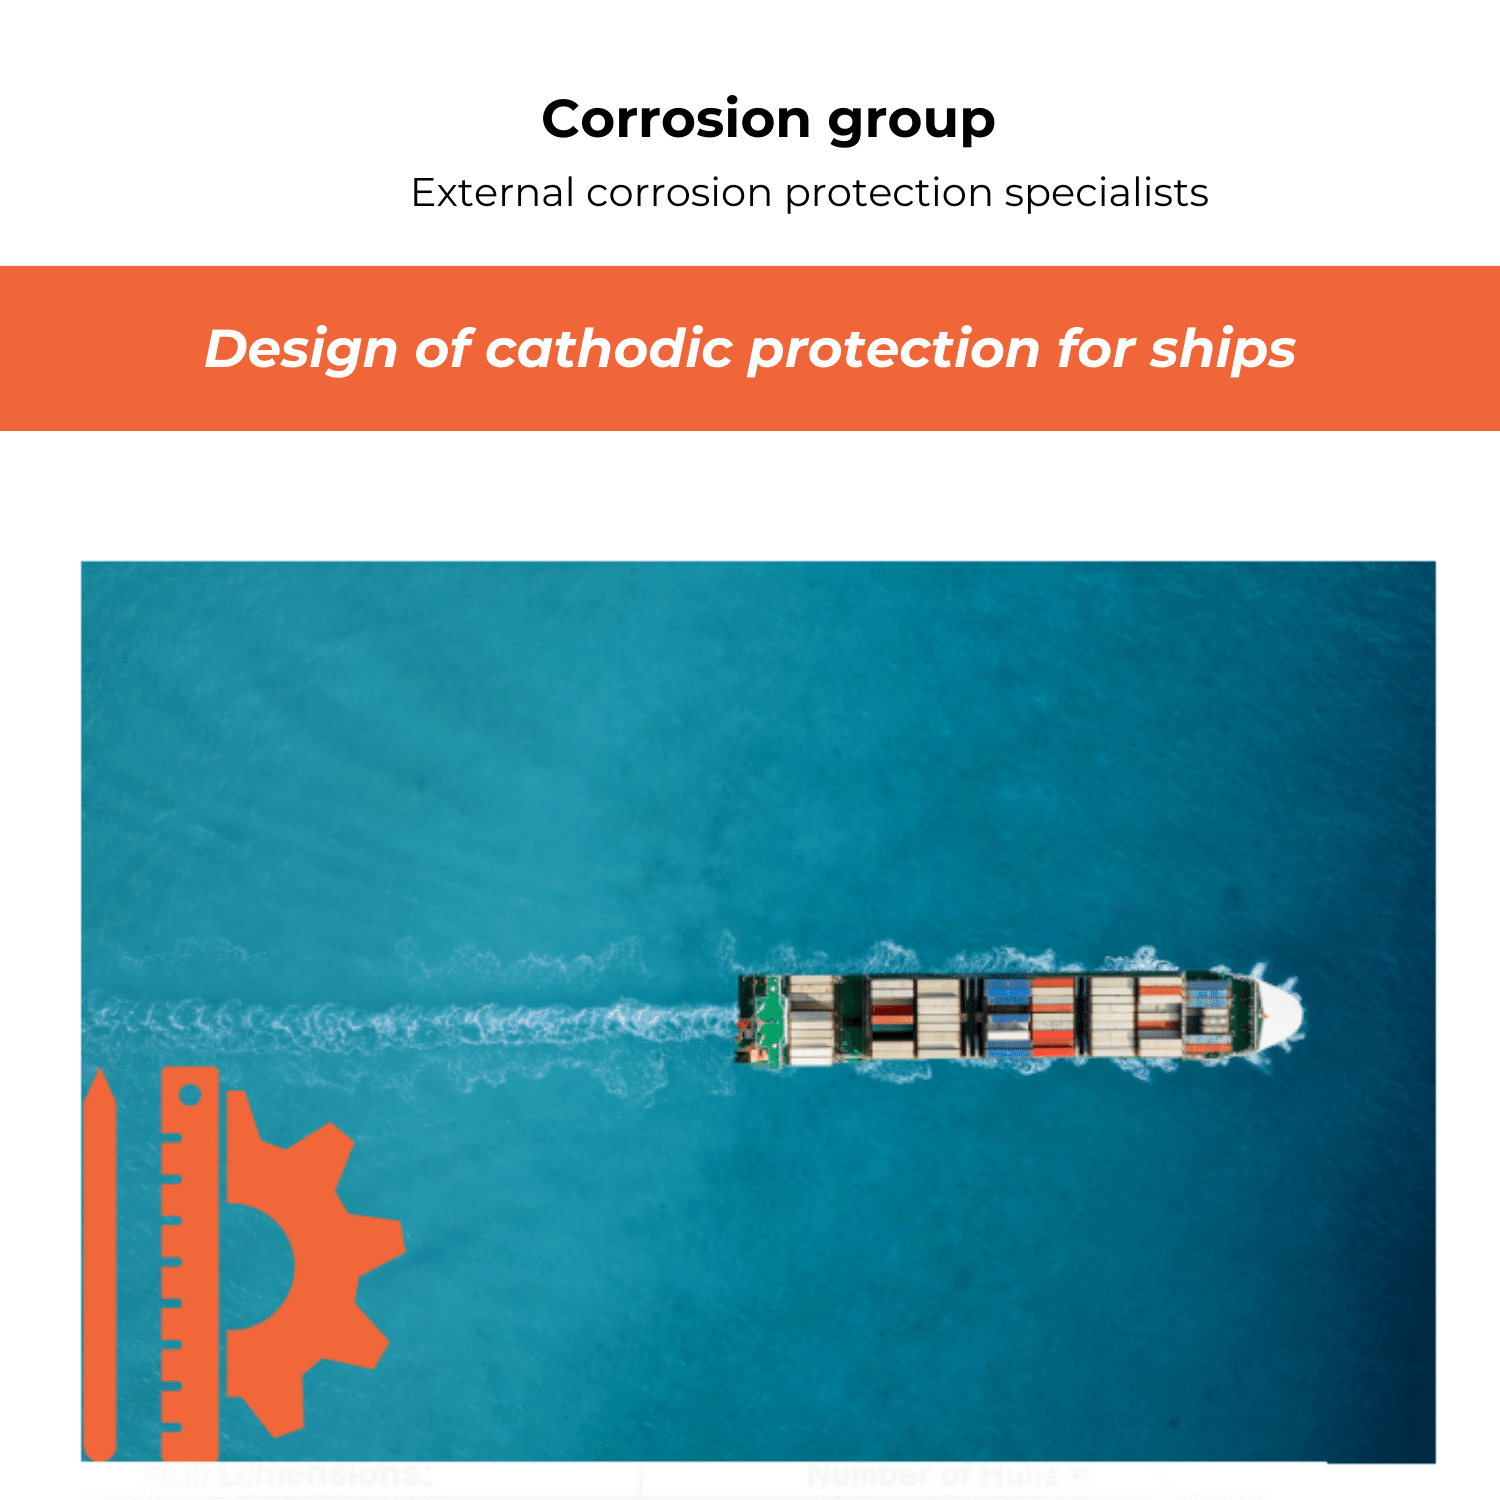 Projektering katodiskt korrosionsskydd för fartyg (1)